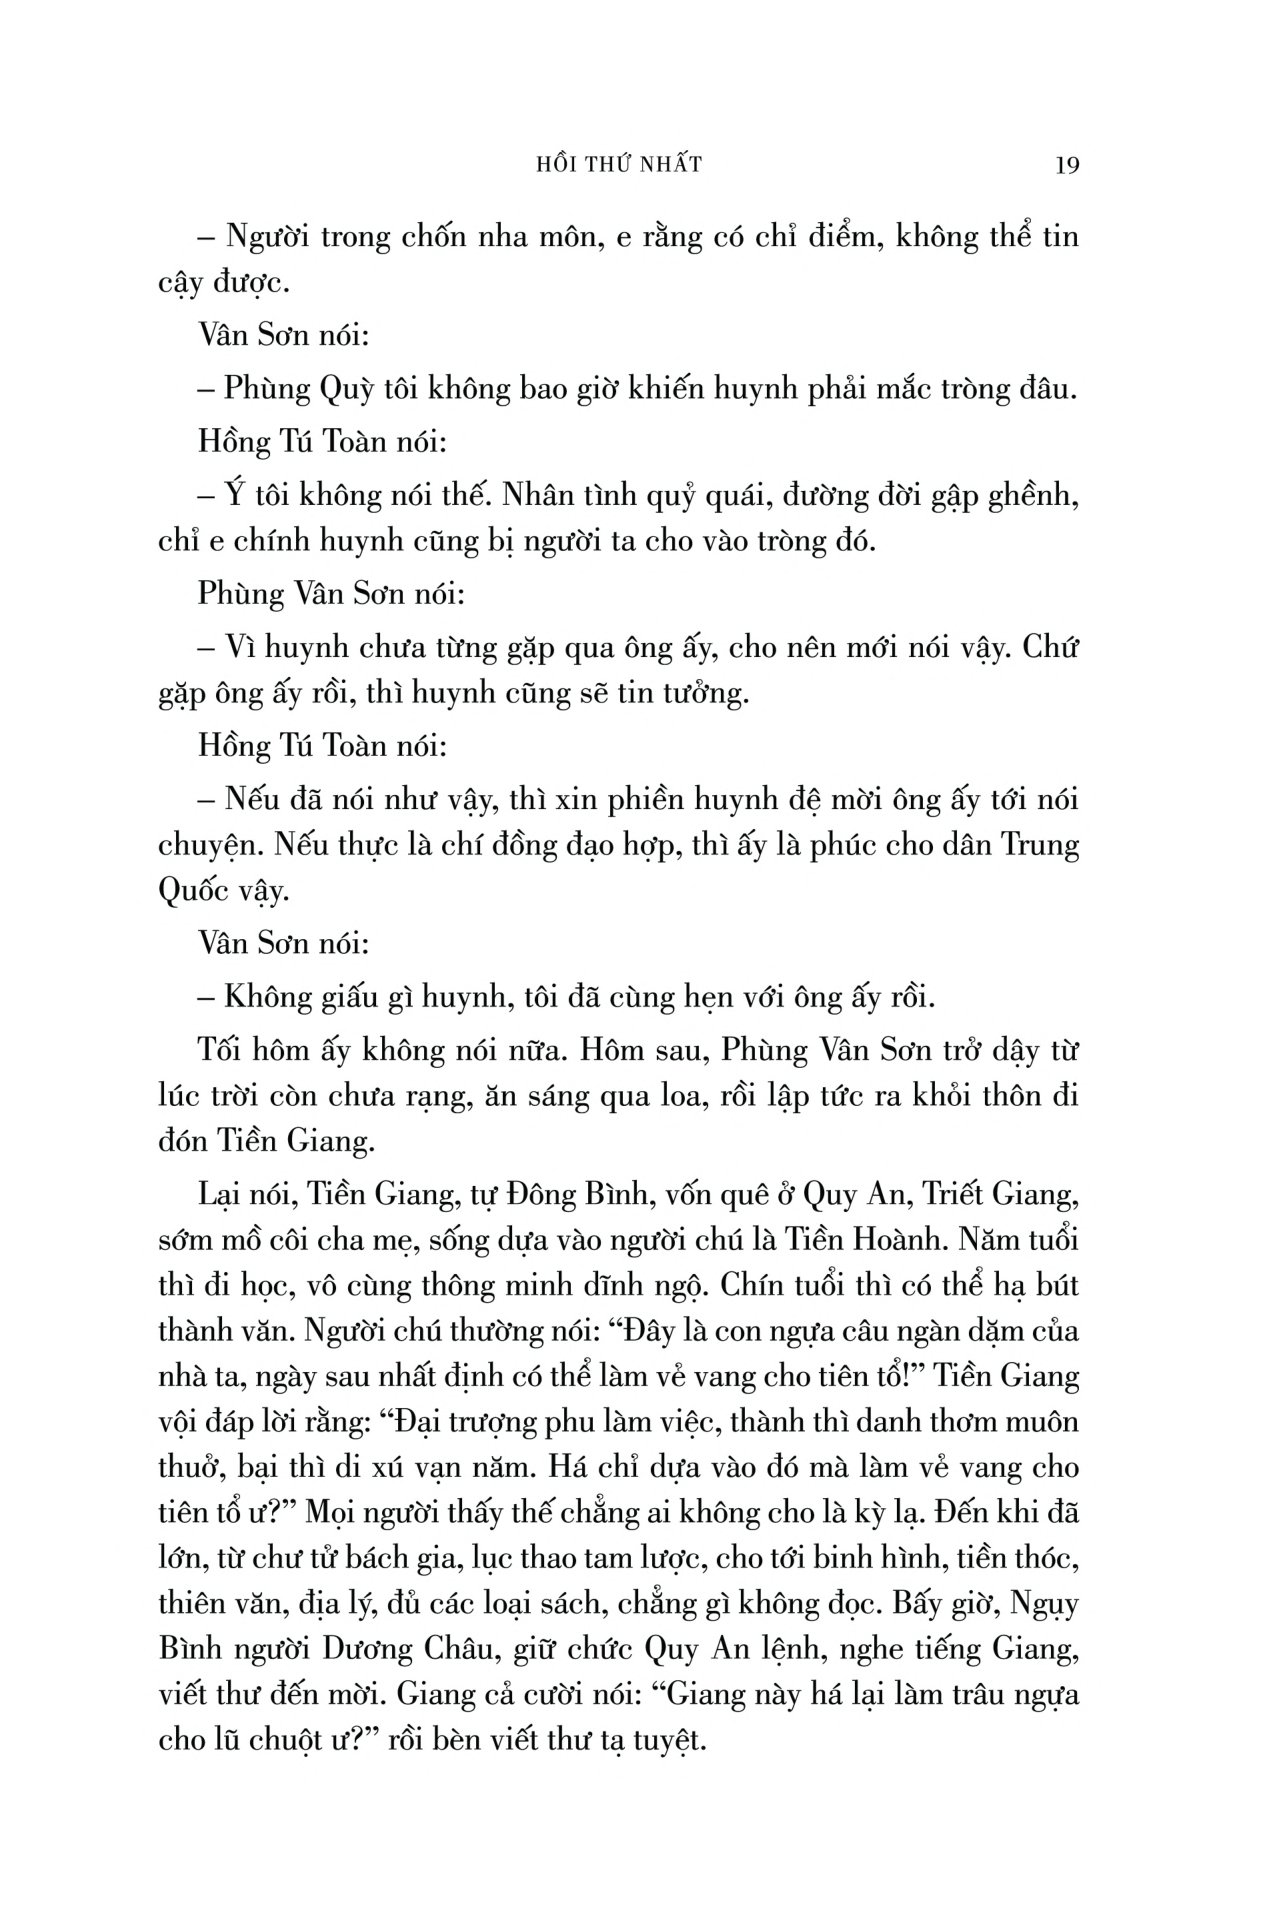 Thái Bình Thiên Quốc Diễn Nghĩa - Bìa Cứng PDF